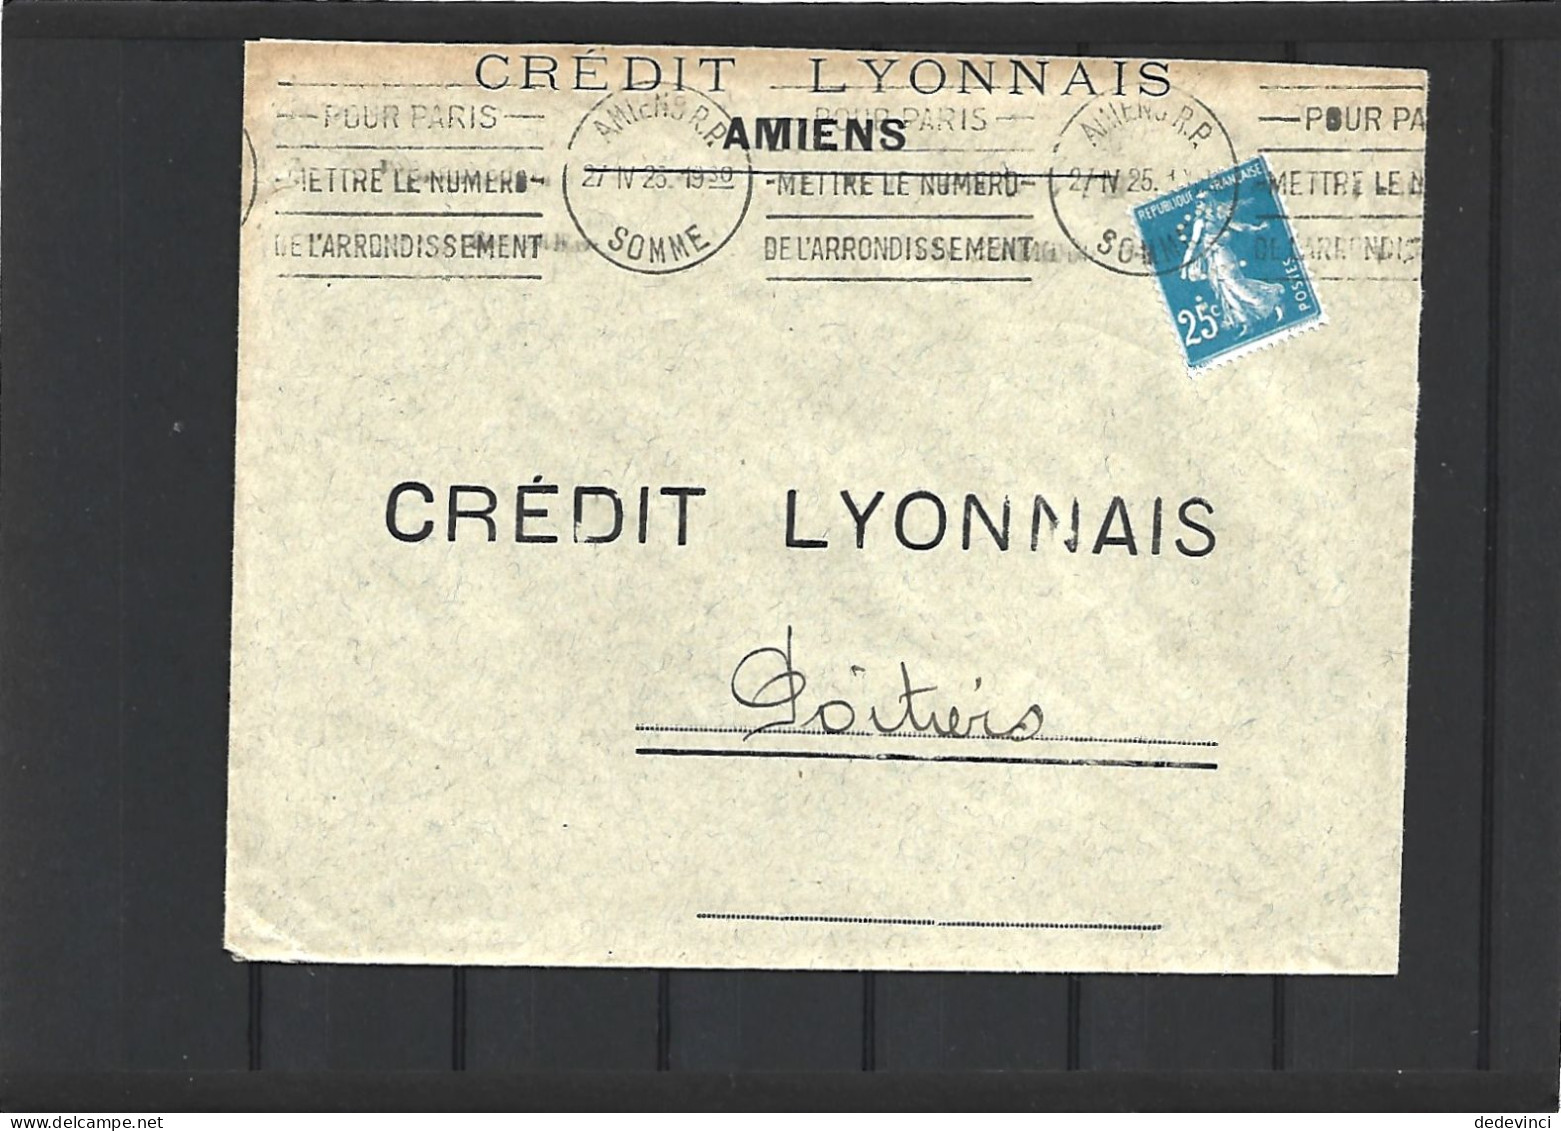 Crédit Lyonnais - Covers & Documents